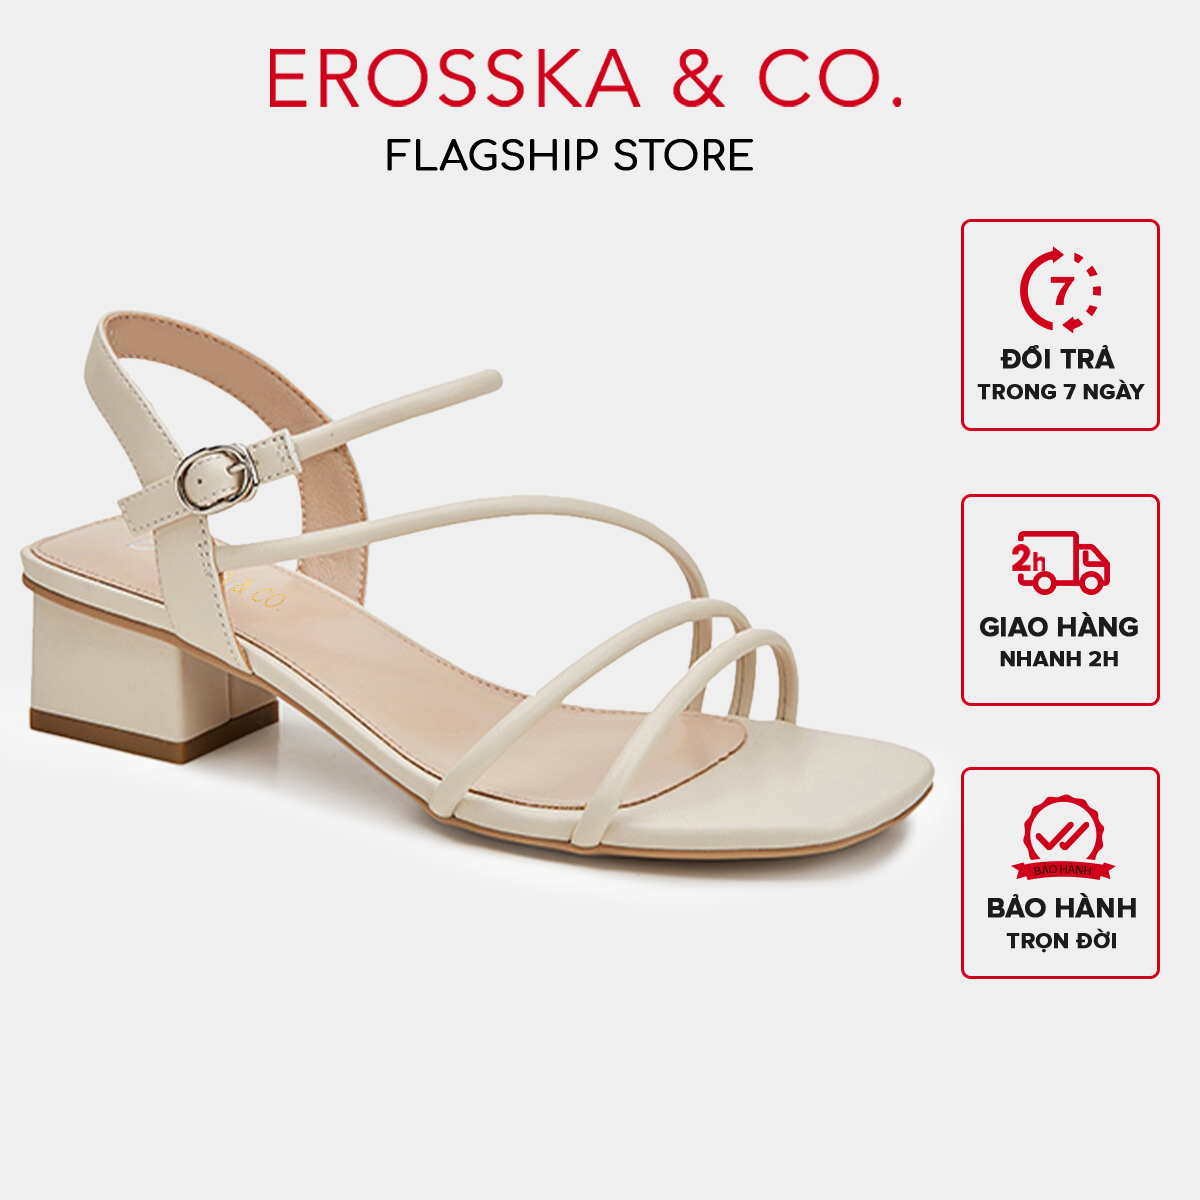 Erosska - Giày sandal cao gót hở mũi phối dây quai mảnh cao 5cm màu nude